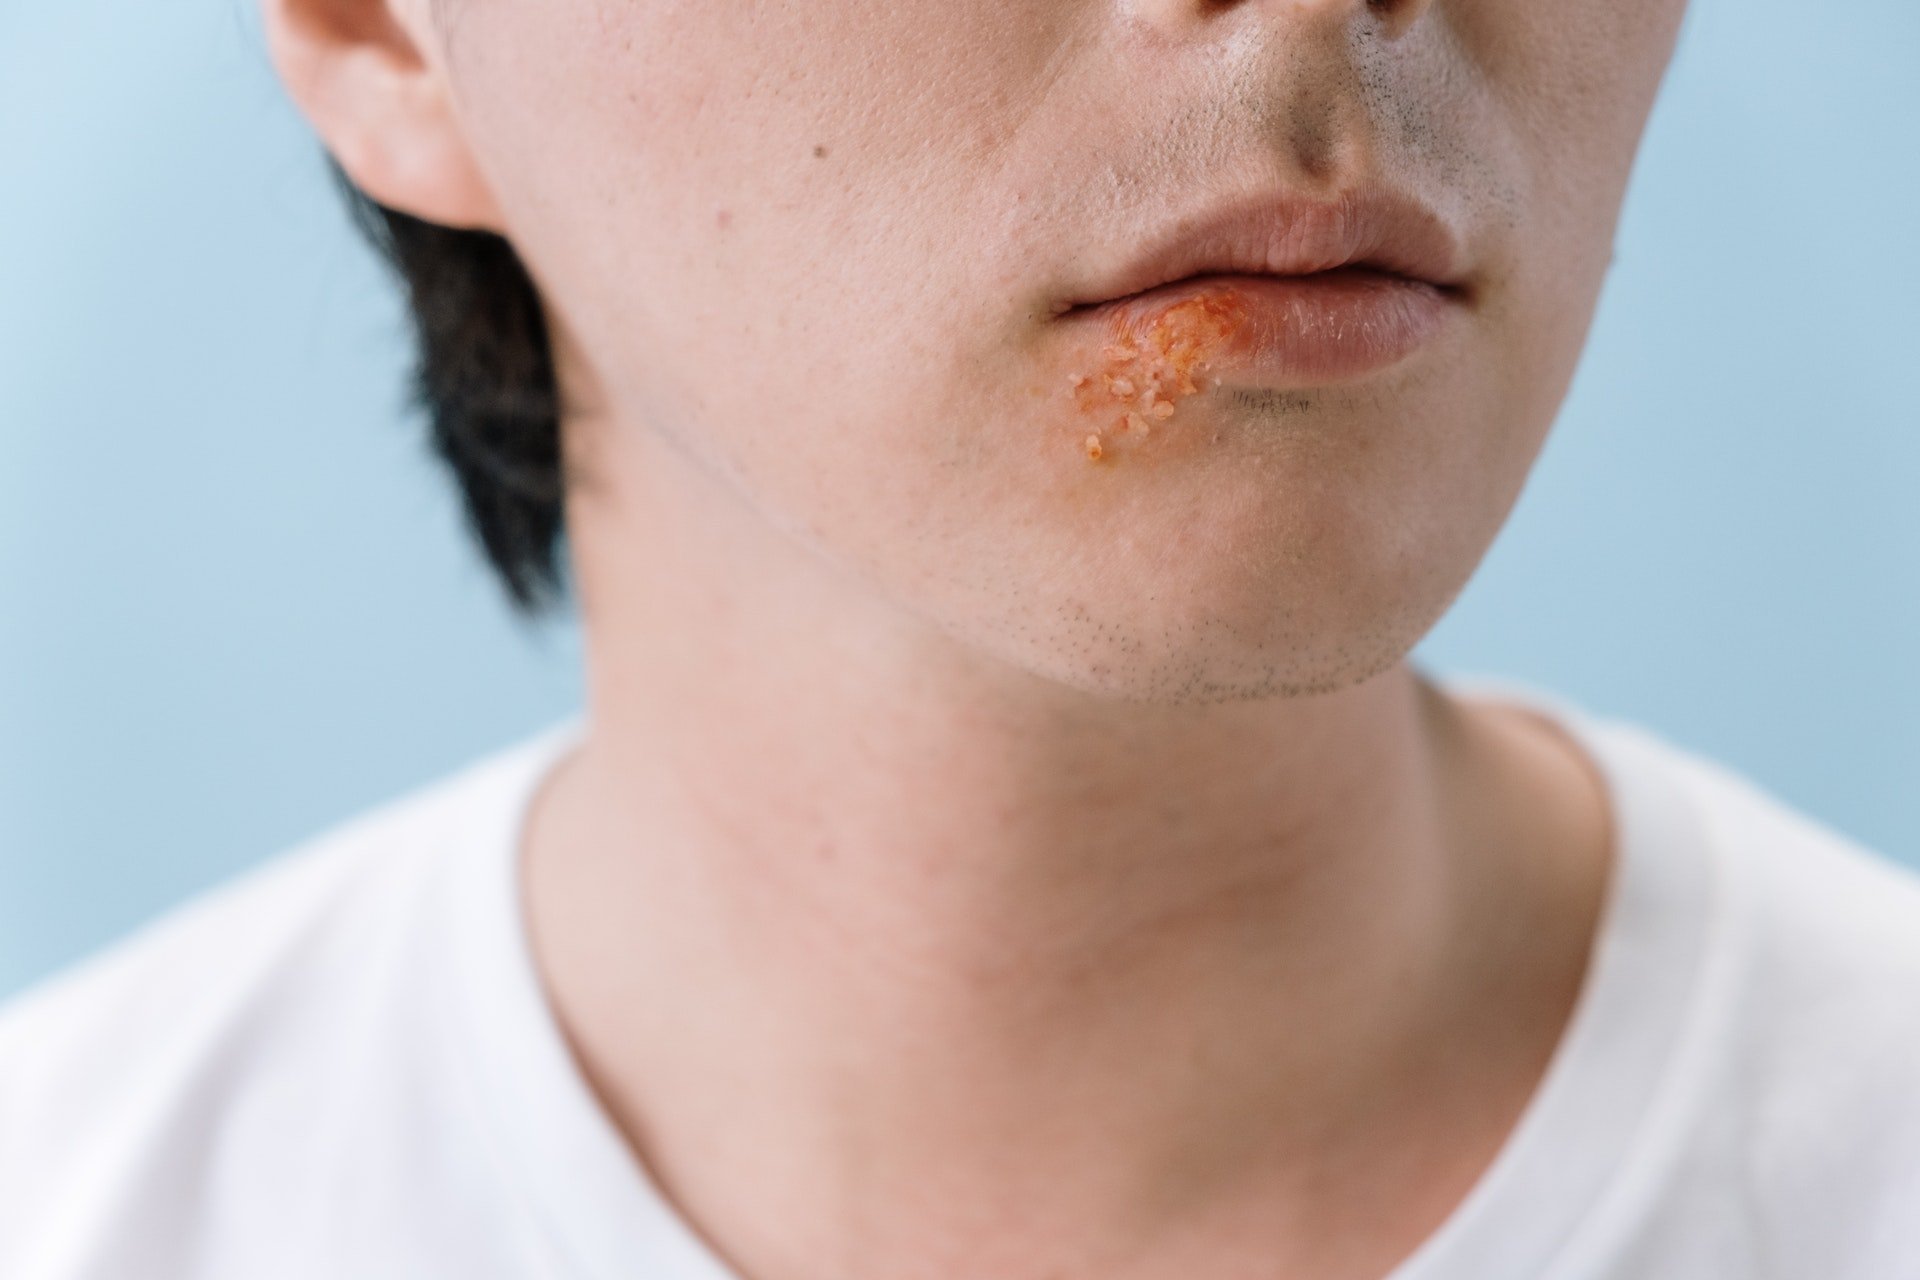 Toma nota de los tratamientos para reducir el herpes labial